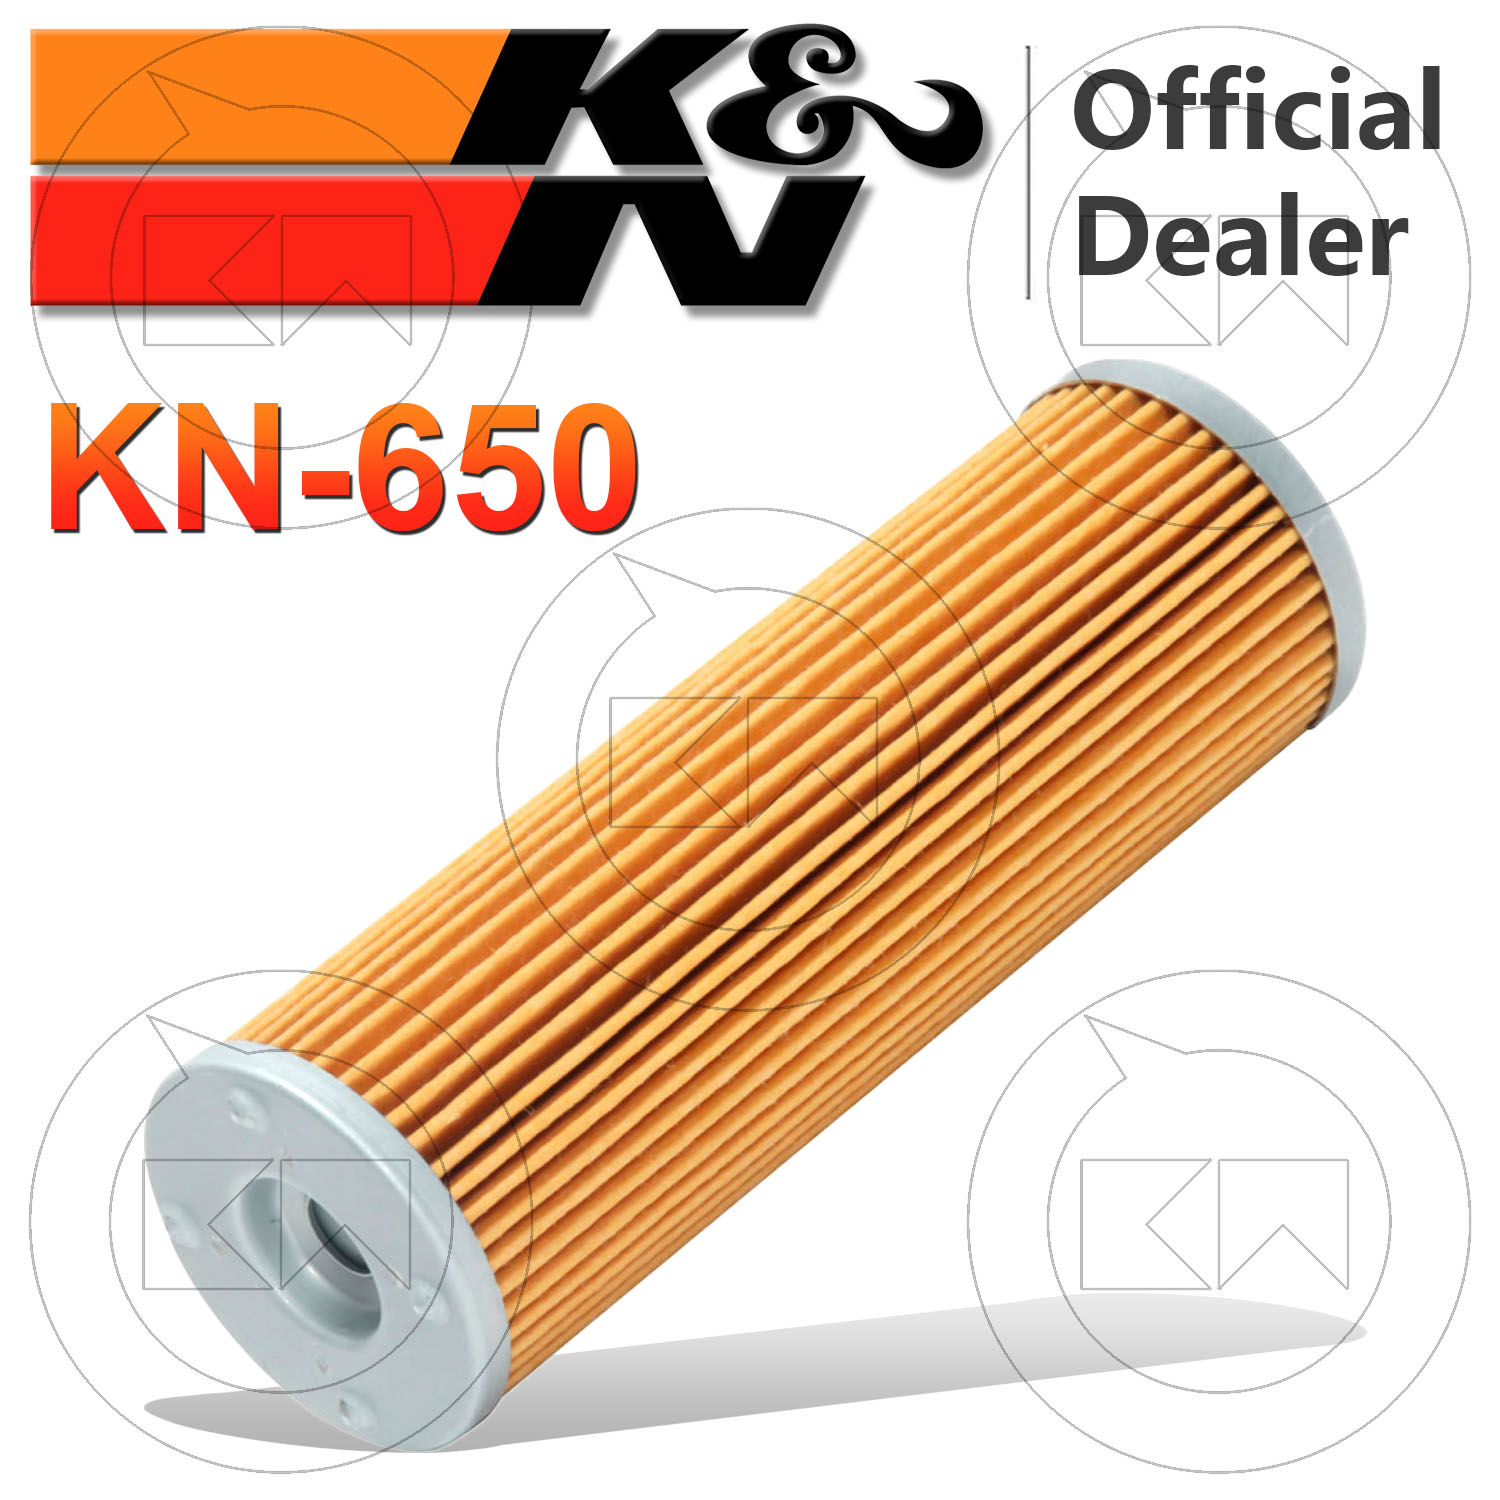 K&N FILTERS KN-650 